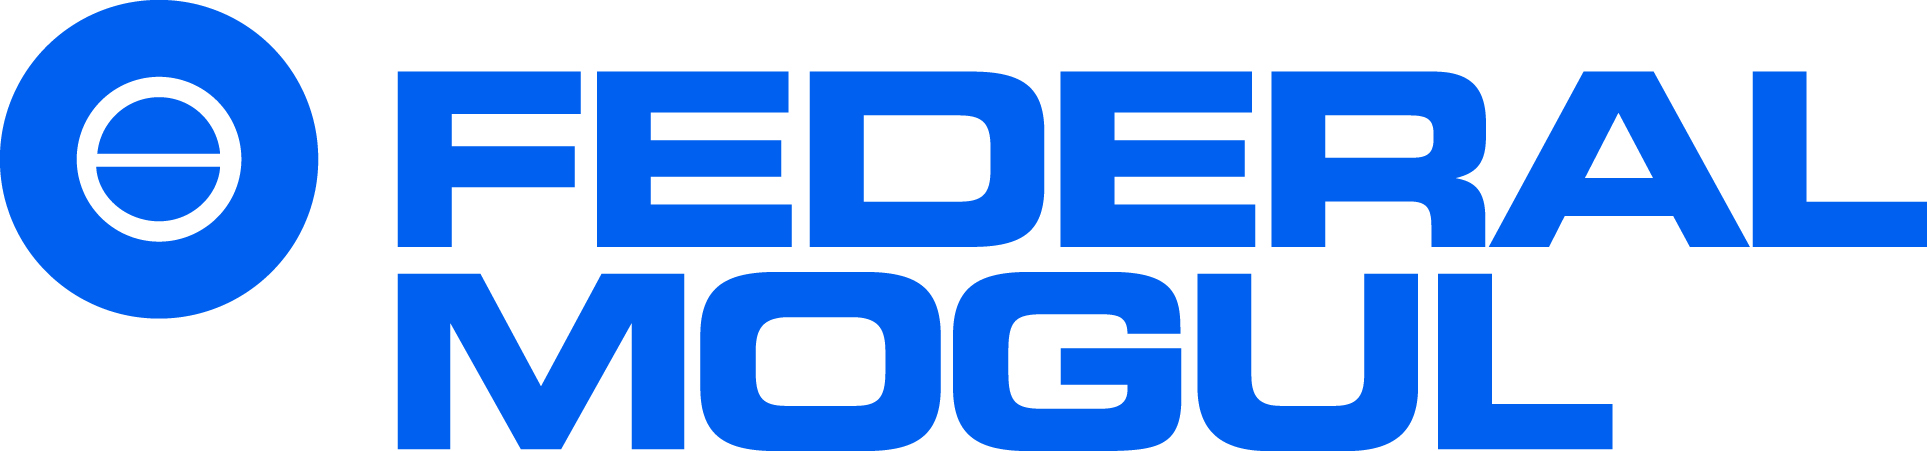 GARAGE DENOT - logo Federal Mogul